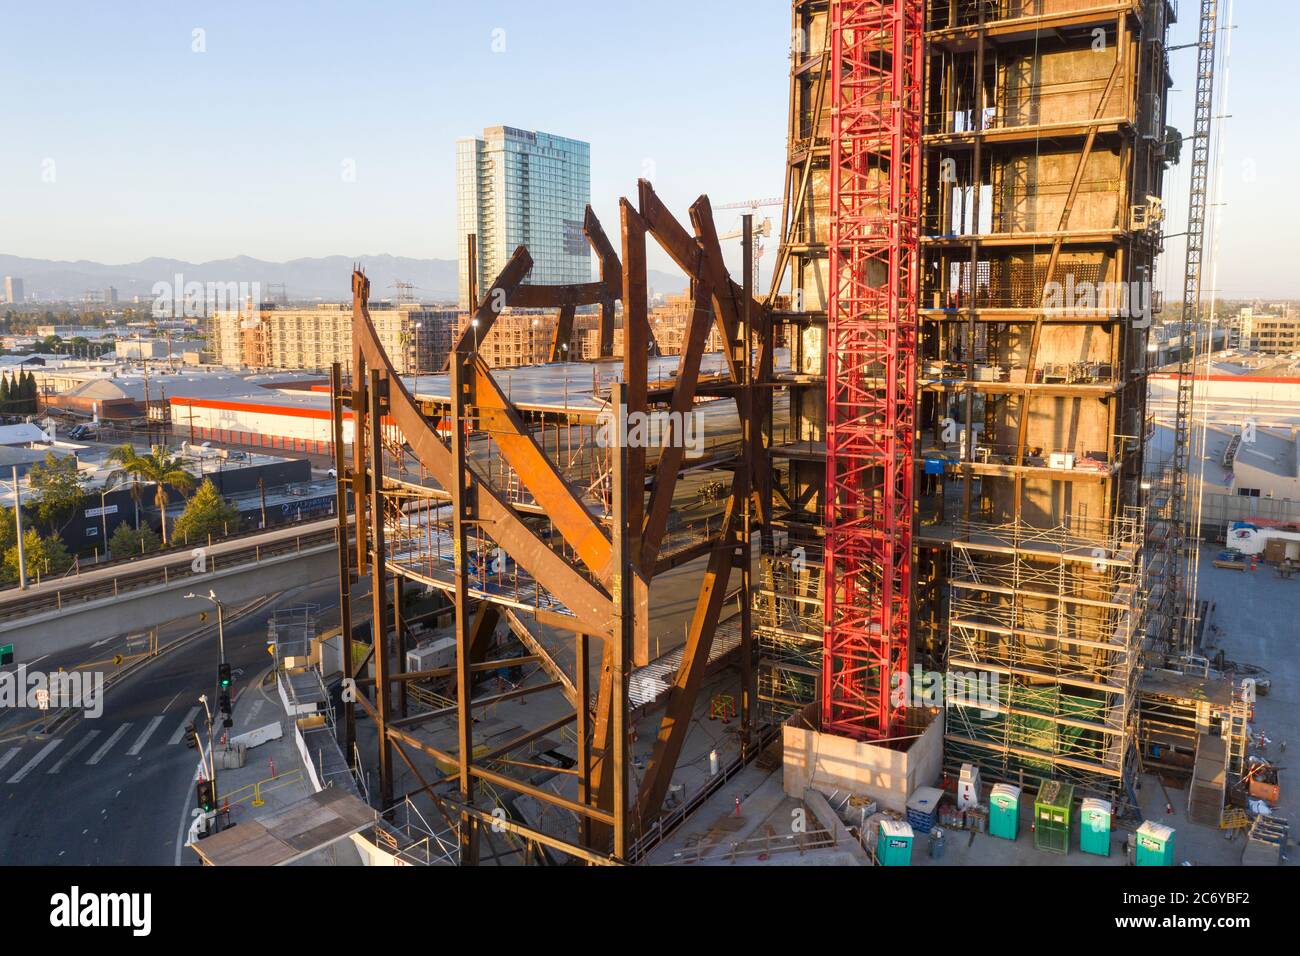 (W)Torre de rapper con su exoesqueleto estructural curvo del arquitecto Eric Owen Moss en construcción en los Ángeles (Wrapper) Foto de stock